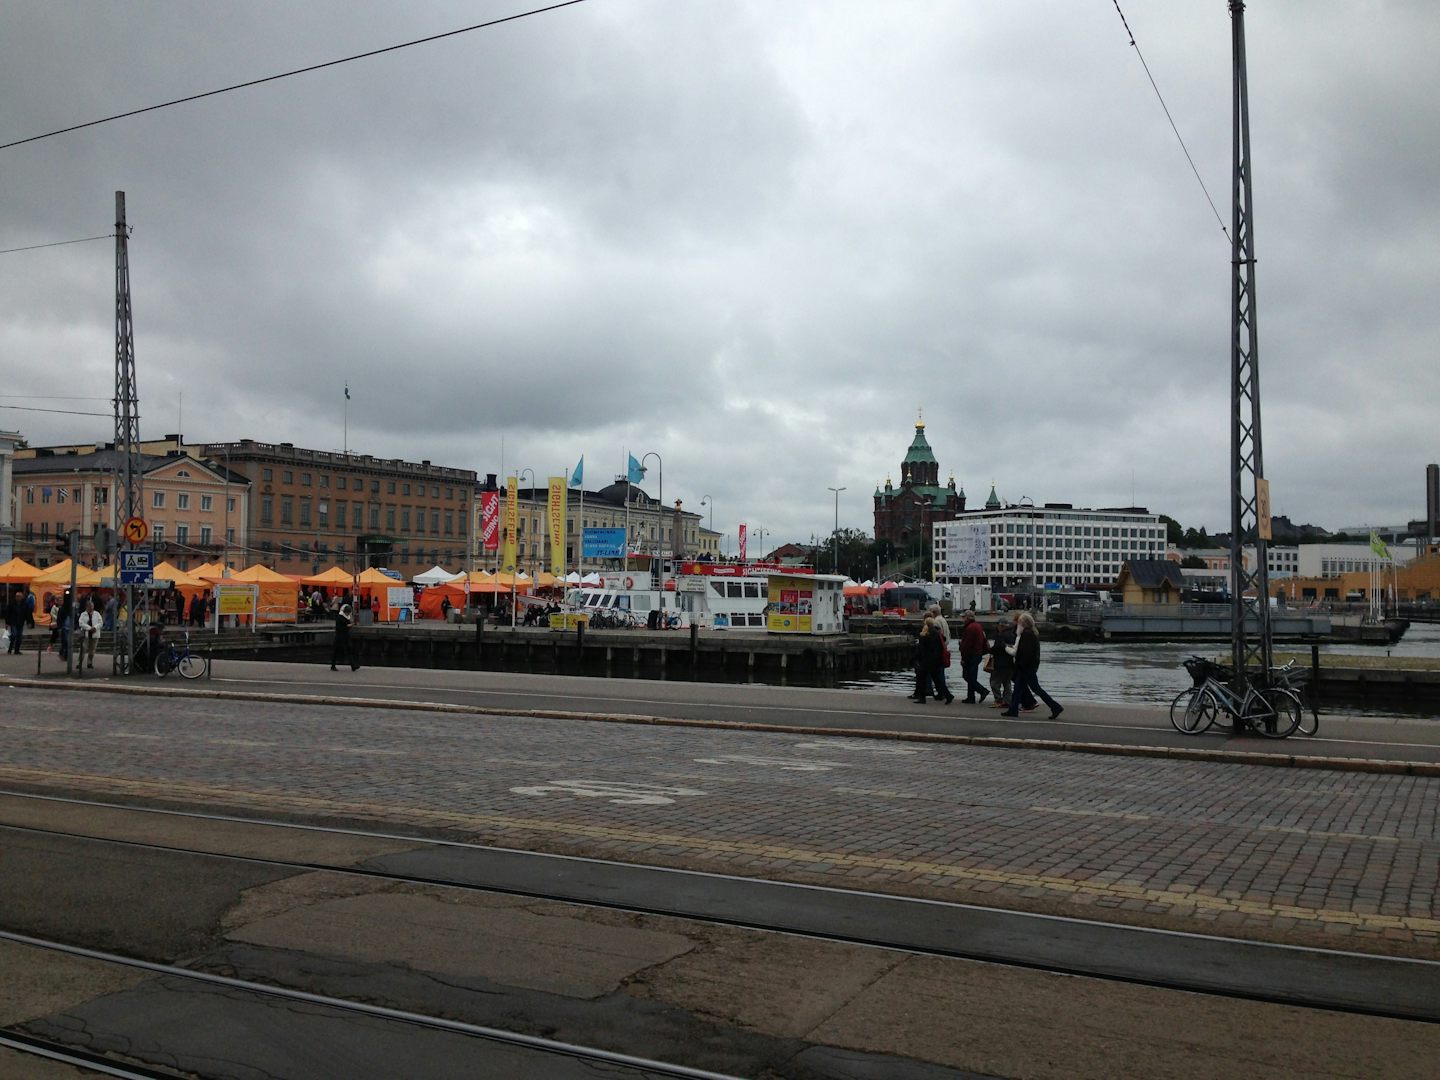 Street fair in Helsinki